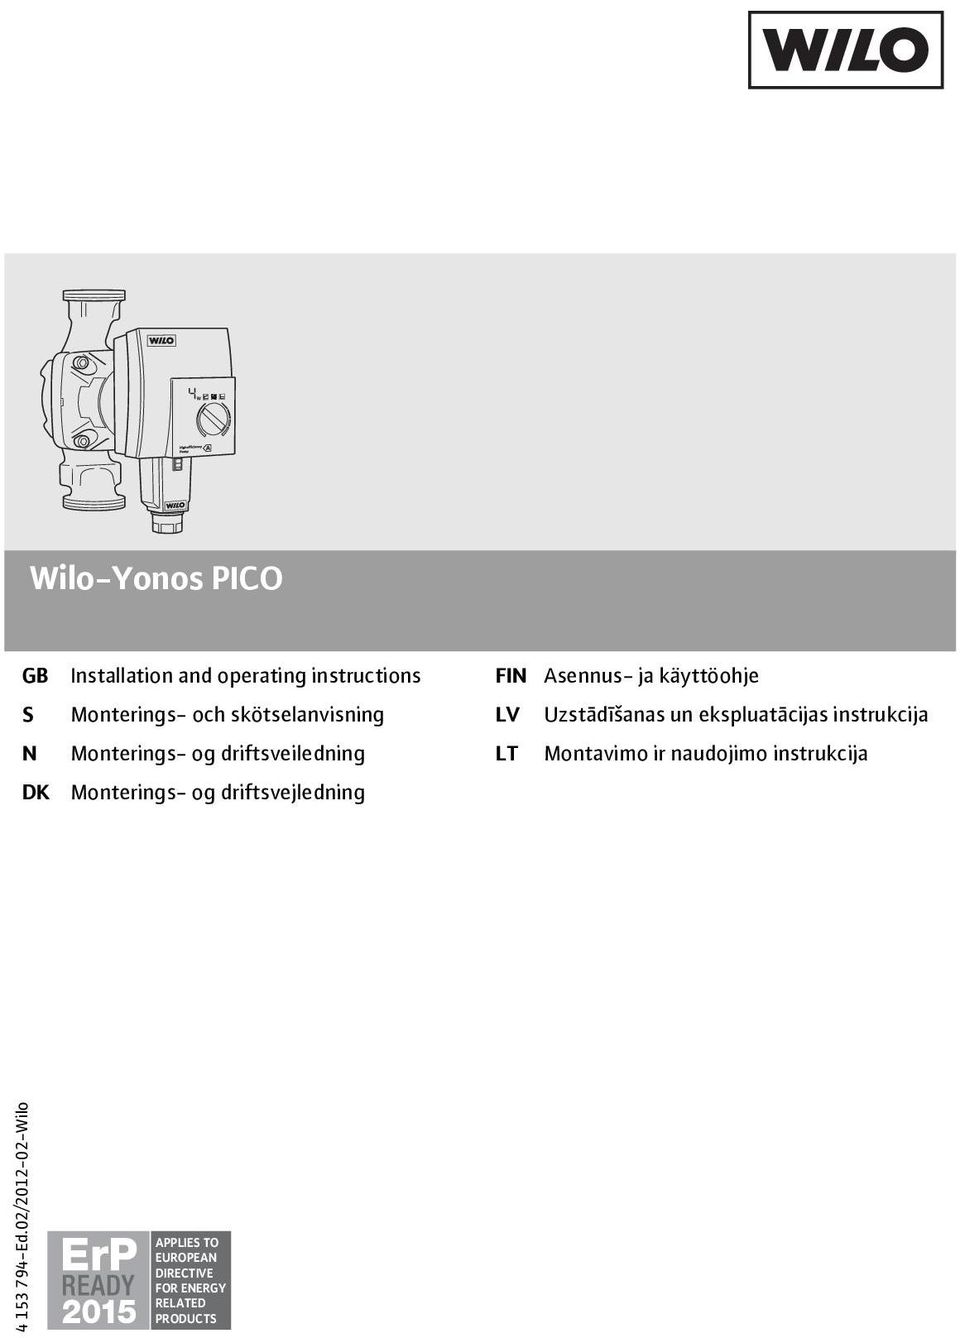 Monterings- og driftsveiledning LT Montavimo ir naudojimo instrukcija DK Monterings- og